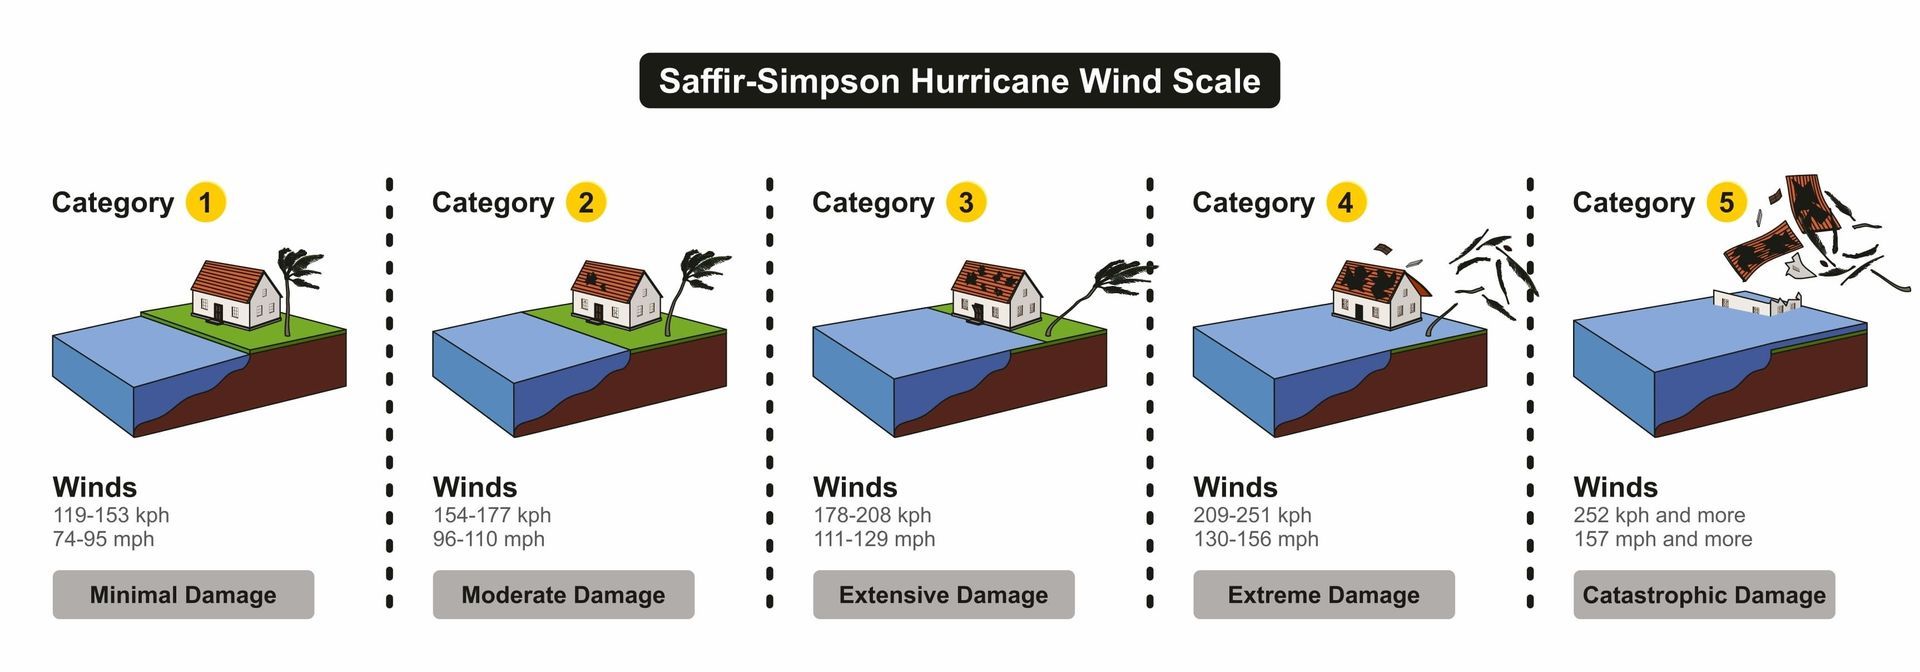 hurricane wind scale rating